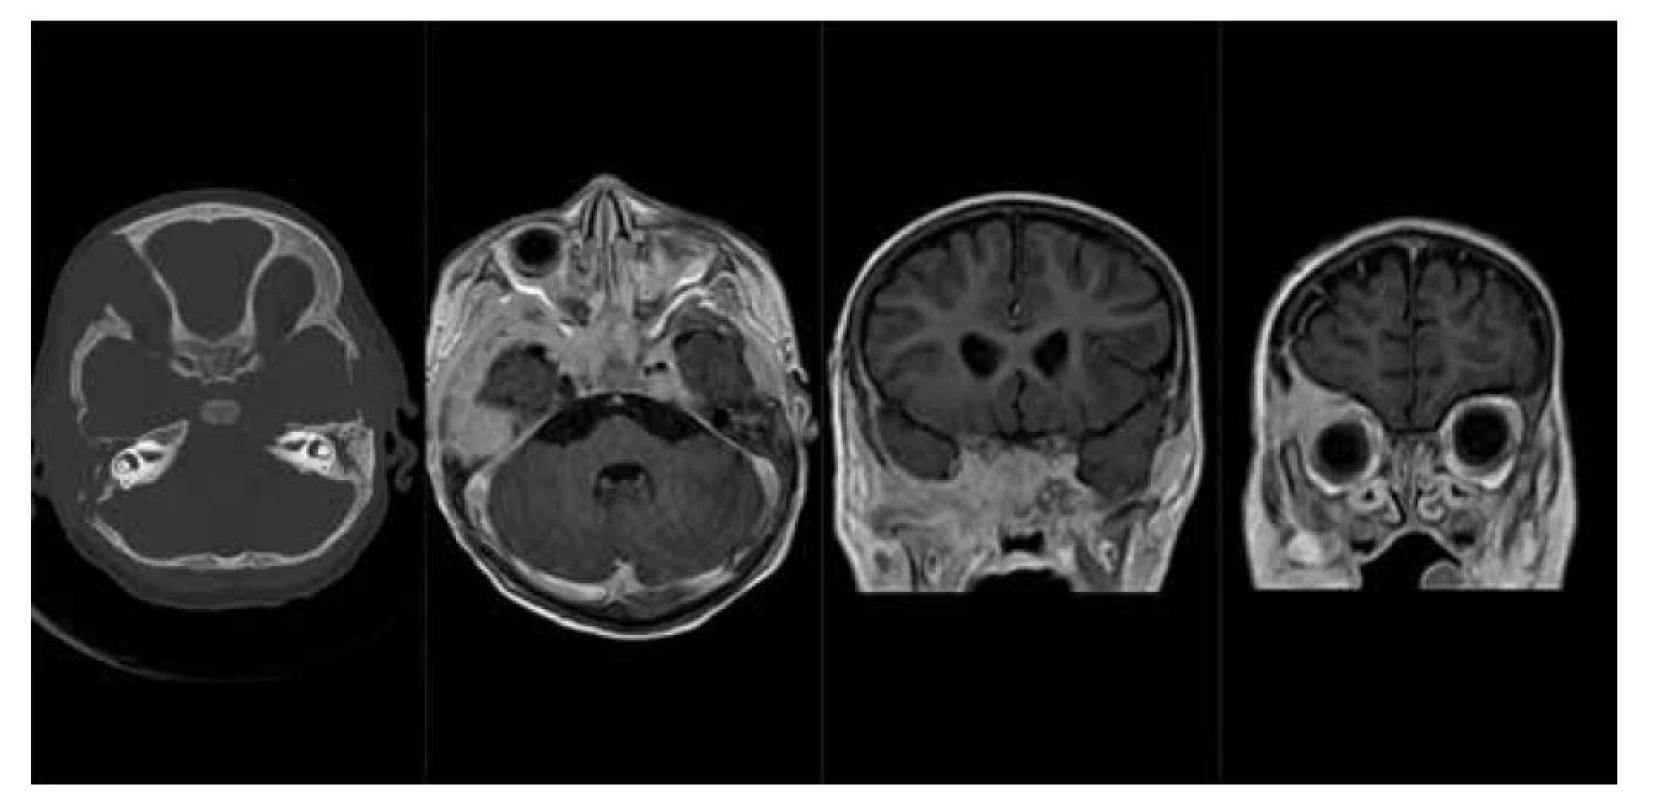 LCH baze lební: a) nativní CT scan v kostním okně, osteolytické léze pravé frontální kosti, zevní porce
pravé temporální kosti a sfenoidální kosti vlevo, b) MR scan – T1 sekvence po podání kontrastní látky v axiální
rovině, solidní měkkotkáňové sytící se expanze baze lební v rozsahu sfenoidálních a temporálních kostí
oboustranně, c, d) MR scan – T1 sekvence po podání k. l. v koronární rovině, sytící se expanze baze lební
a stropu pravé orbity.<br>
Fig. 4. LCH of skull base: a) CT scan – bone window, lytic lesions of frontal bone, temporal bone on the right
side and sphenoid bone on the left, b) MR scan – T1 after contrast medium injection, axial plane, soft tissue
tumors of skull base, c, d) MR scan – T1 after contrast medium injection, coronal plane, enhansing tumor of
skull base and the right orbit ceiling.